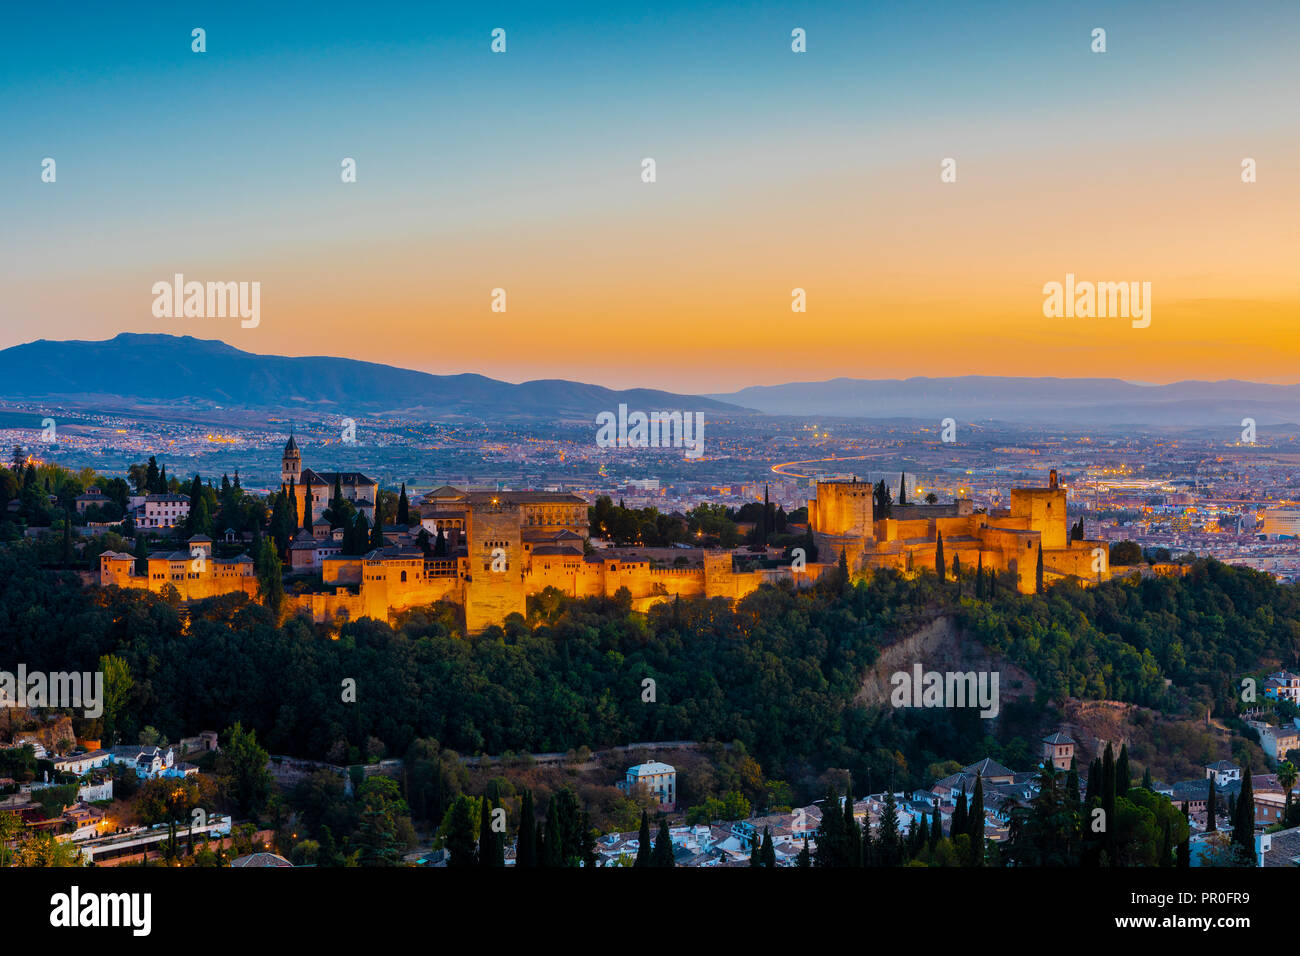 Vue de l'Alhambra, Site du patrimoine mondial de l'UNESCO, et de la Sierra Nevada au crépuscule, Grenade, Andalousie, Espagne, Europe Banque D'Images